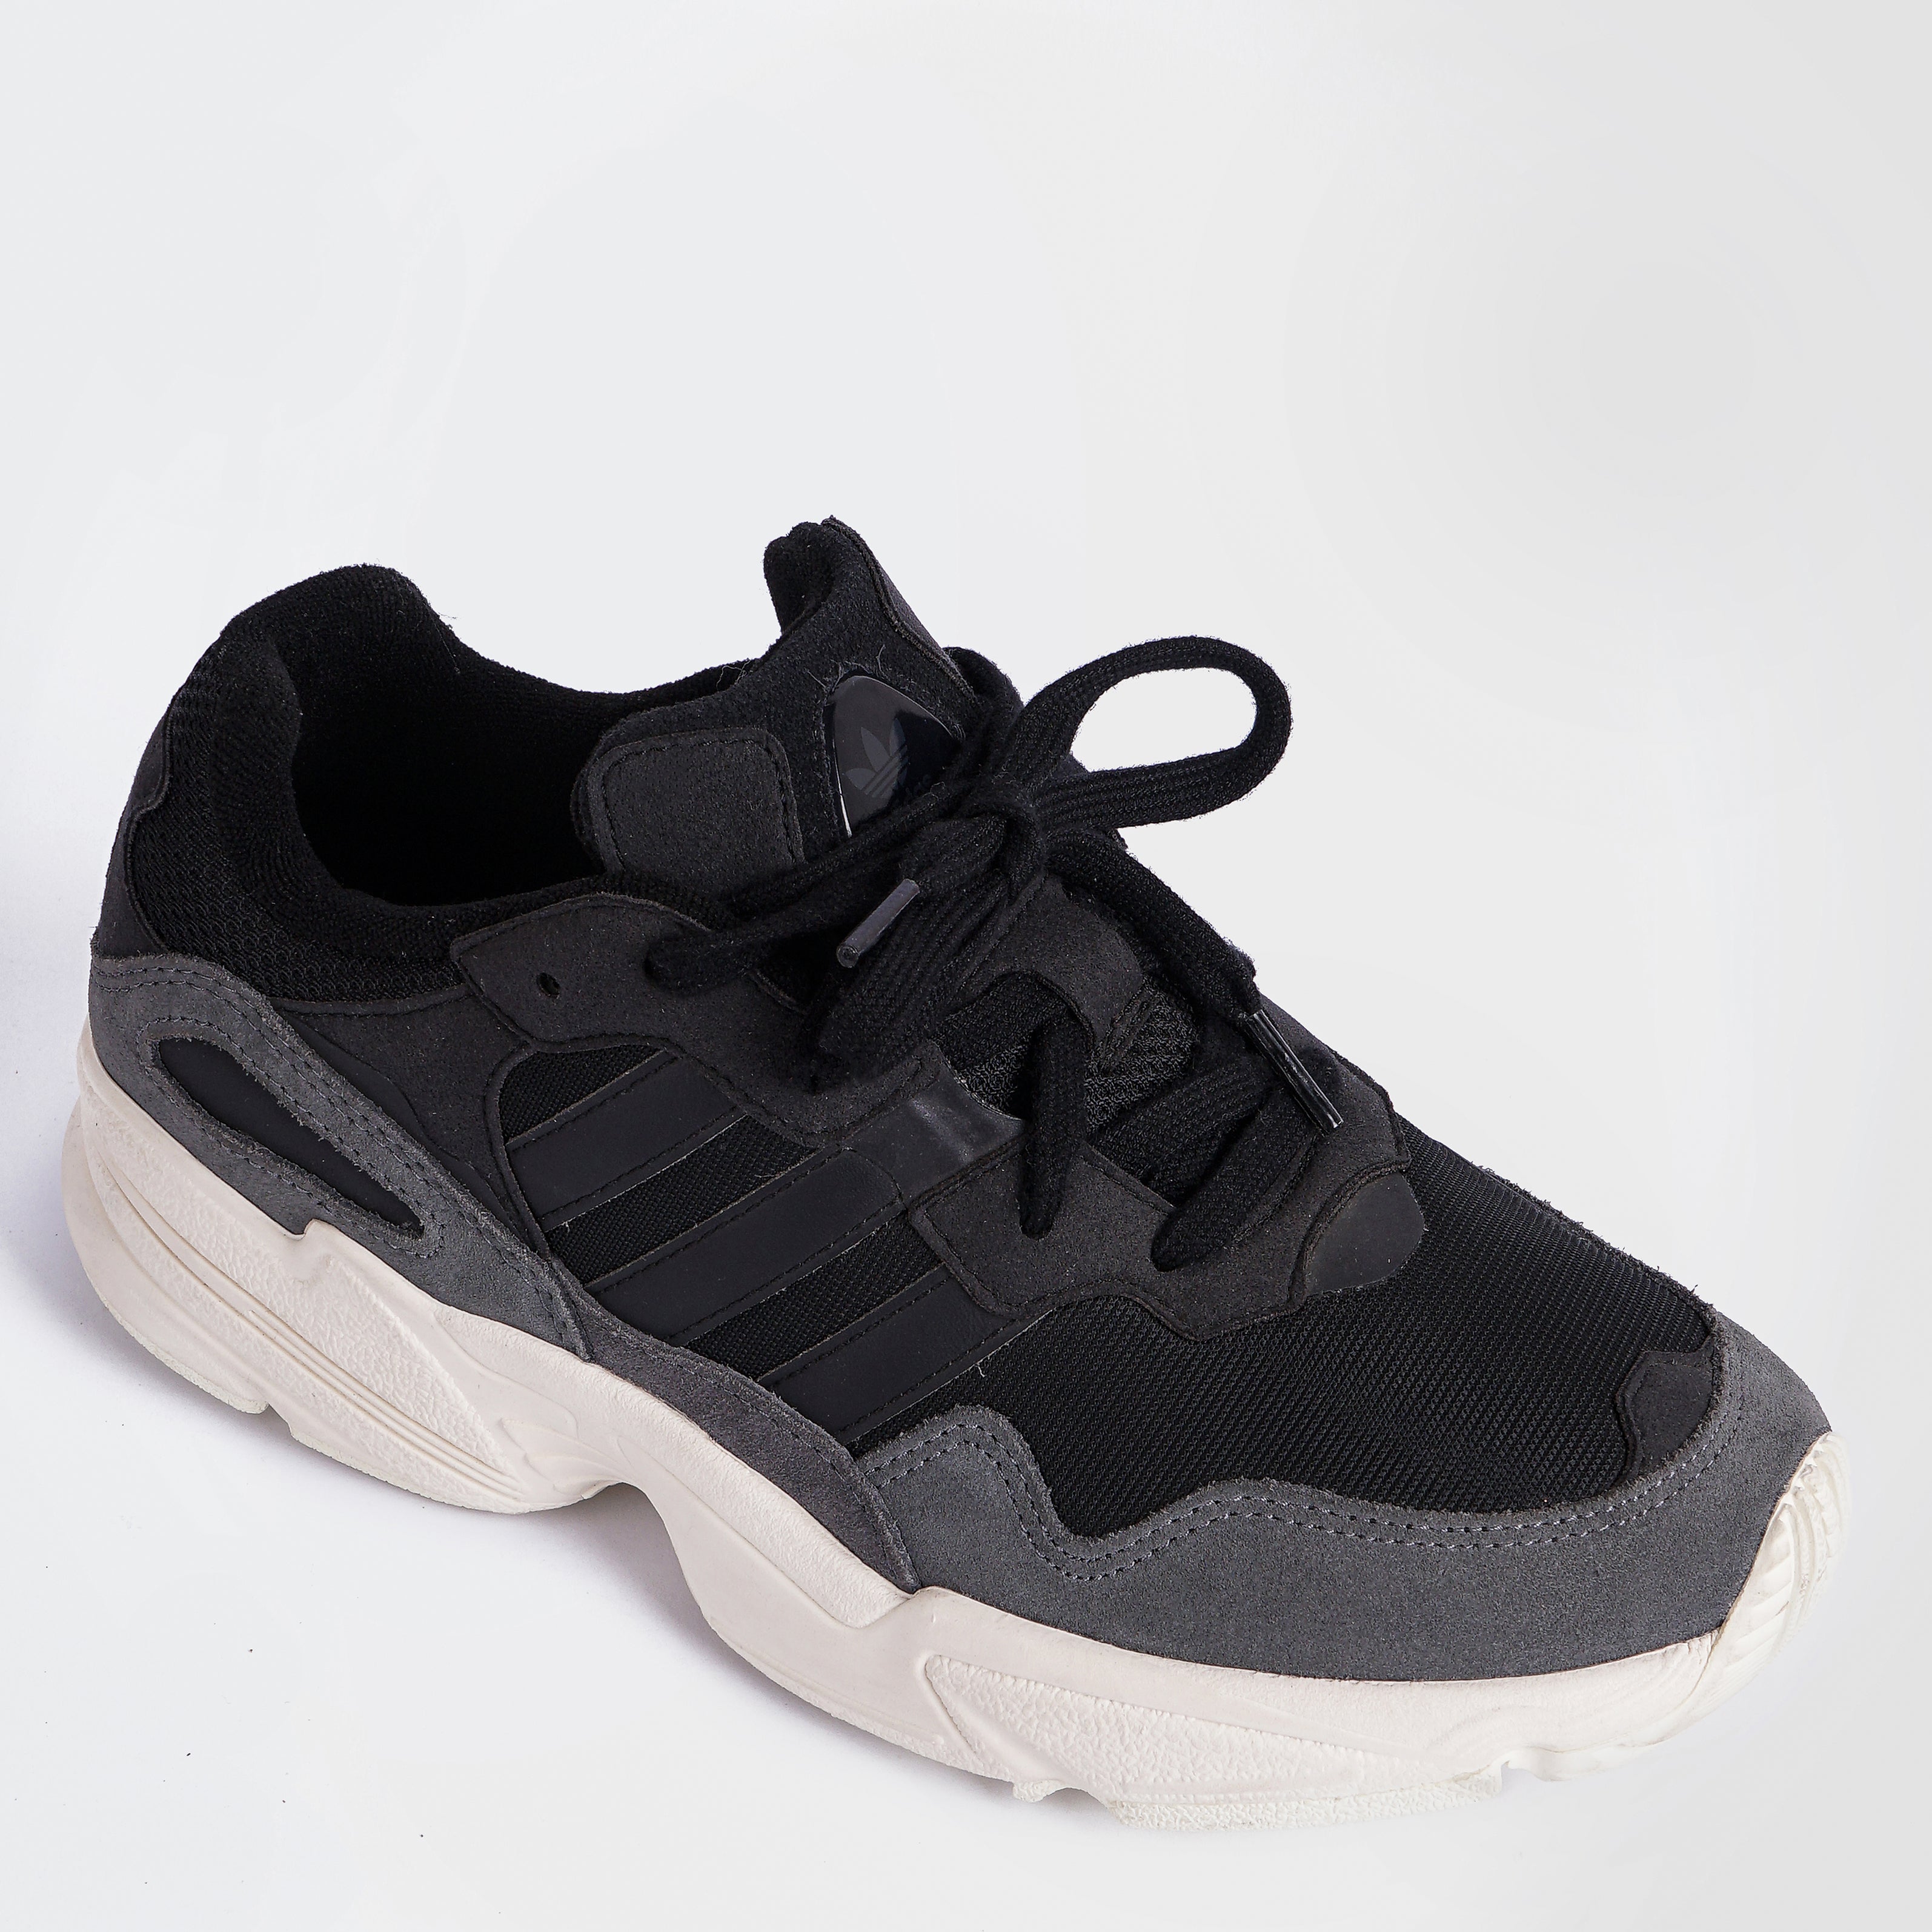 Original Adidas Yung 96 Retro Core Black Sneakers - Marca Deals - Adidas